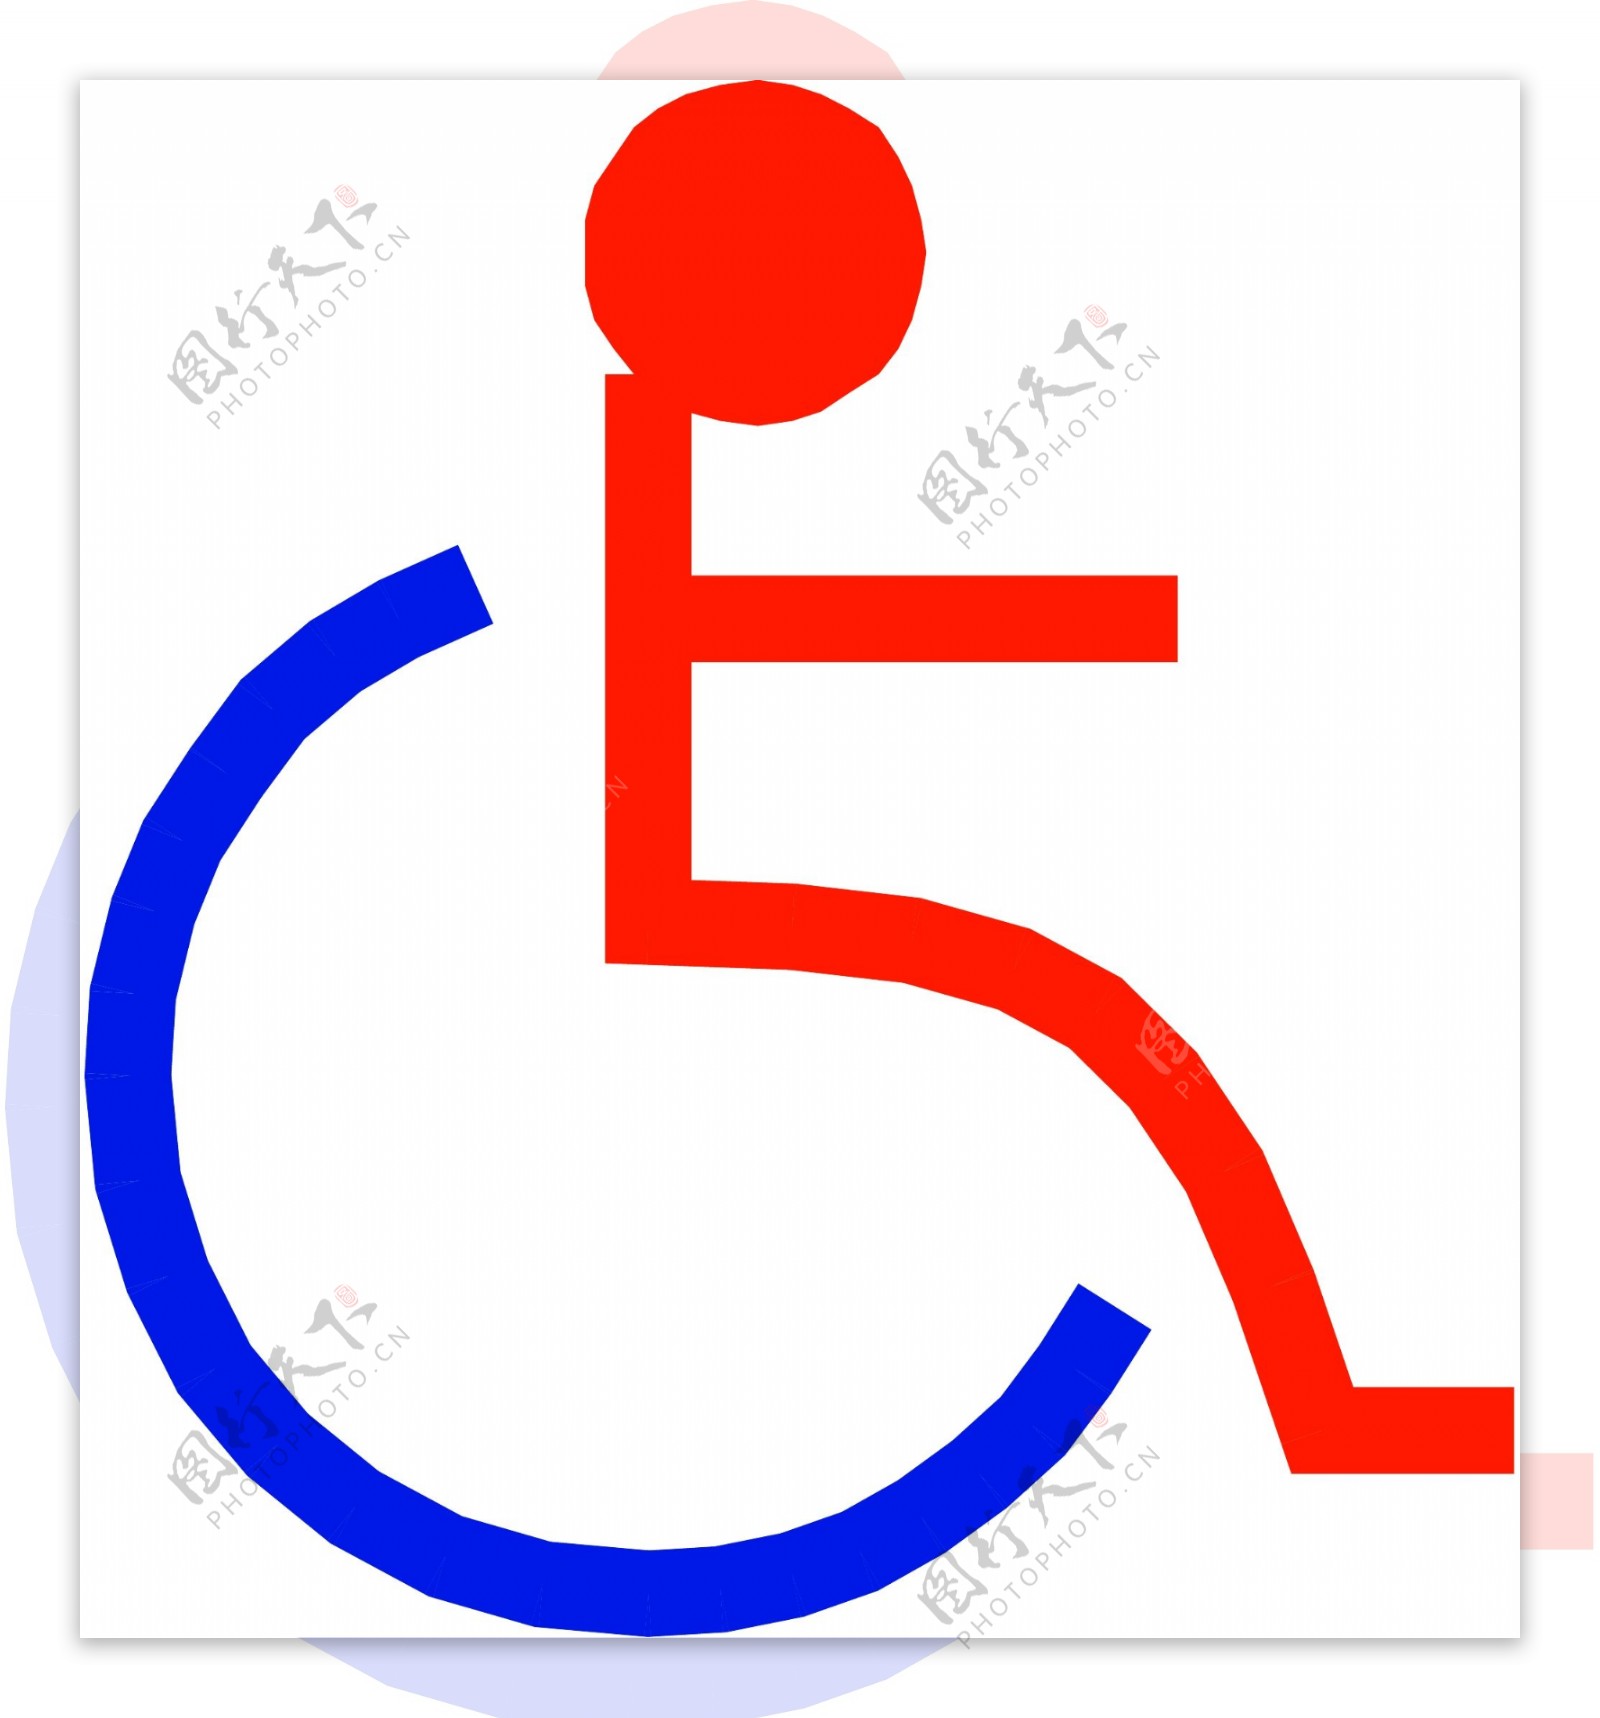 残疾人设施标识图片